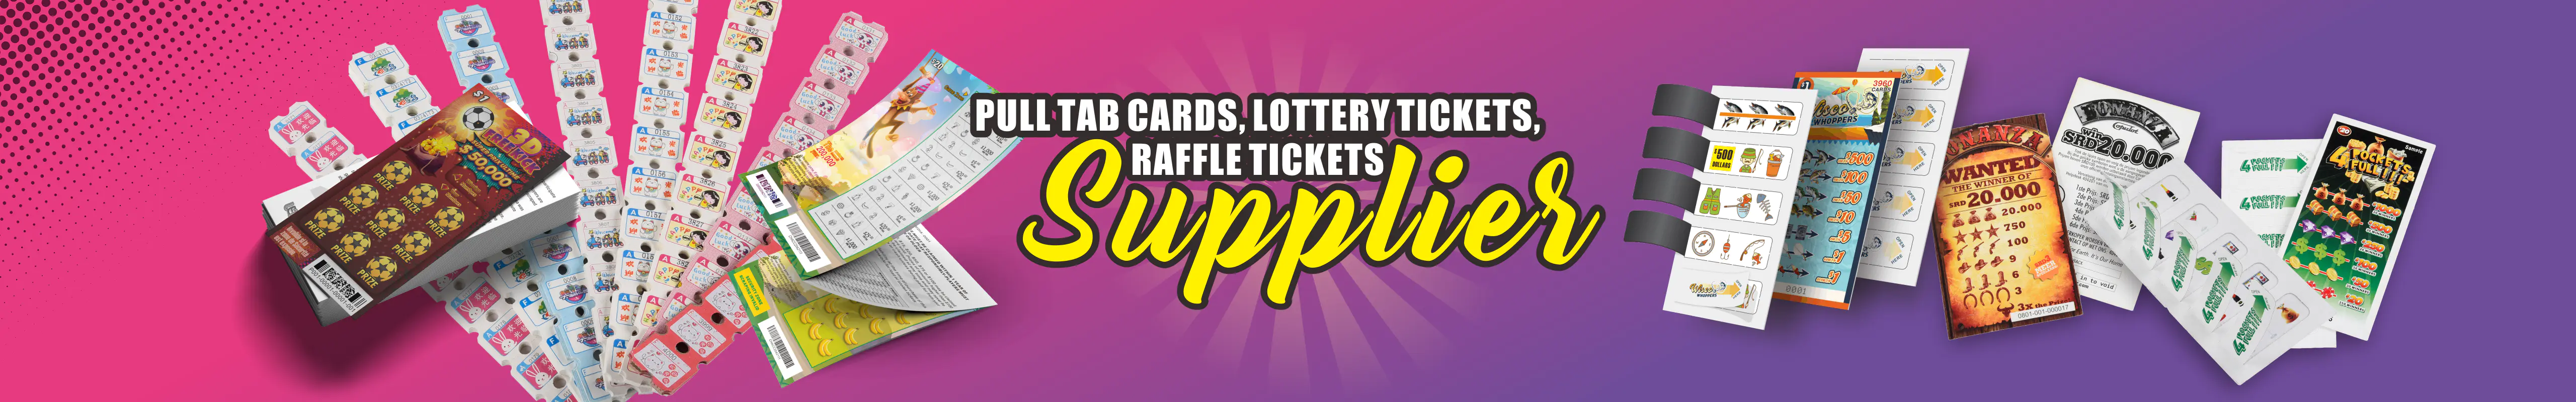 Gratta e Vinci | Biglietti della lotteria | Pull Tab Ticket Carte sigillo